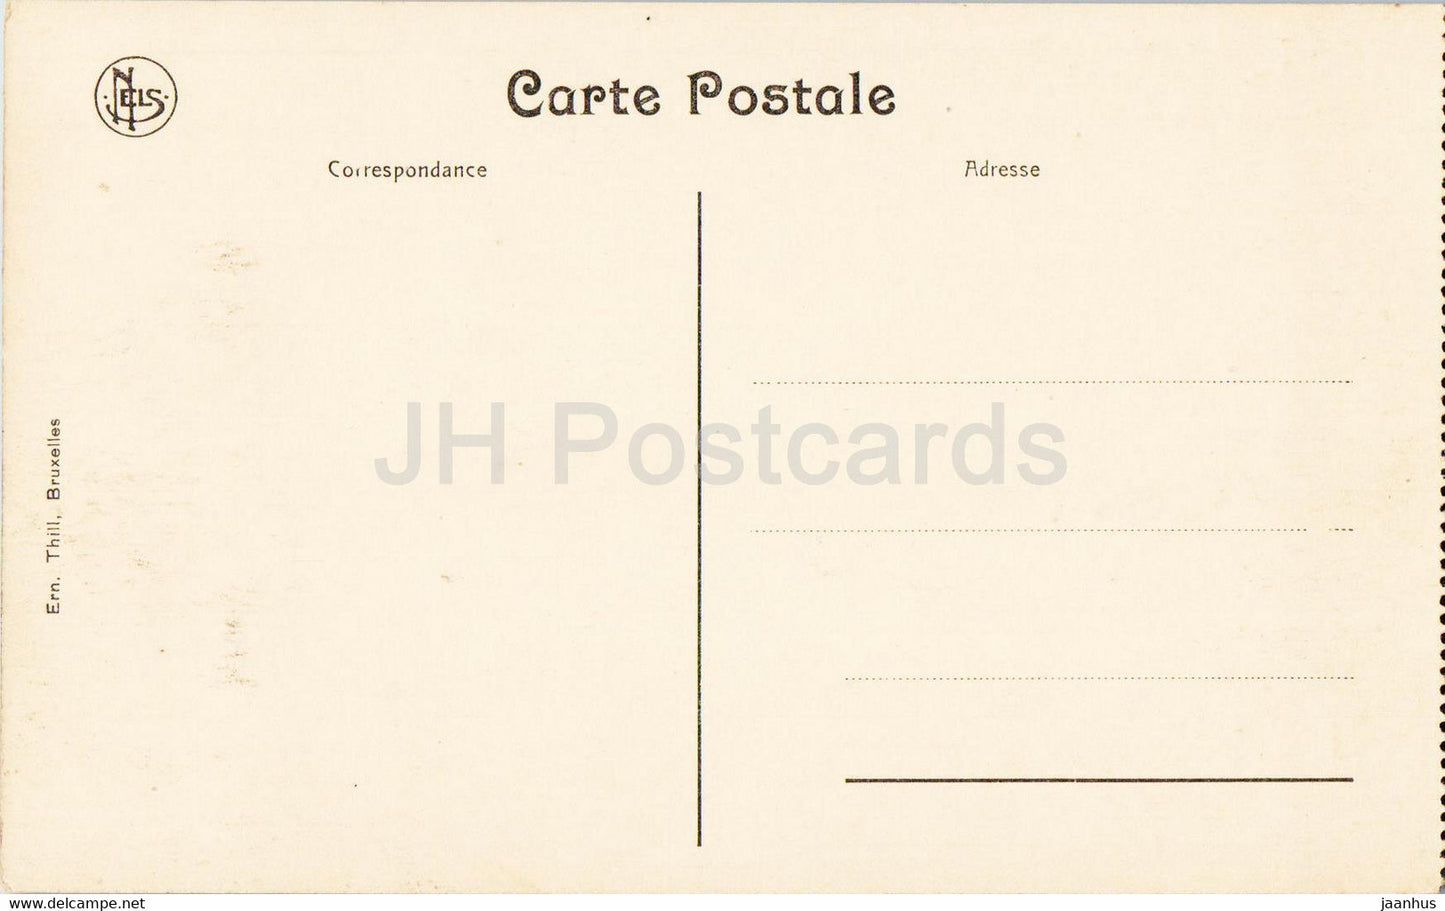 Ruines de Louvain - Rue de Diest - Rue Diest - Première Guerre mondiale - militaire - carte postale ancienne - Belgique - inutilisée